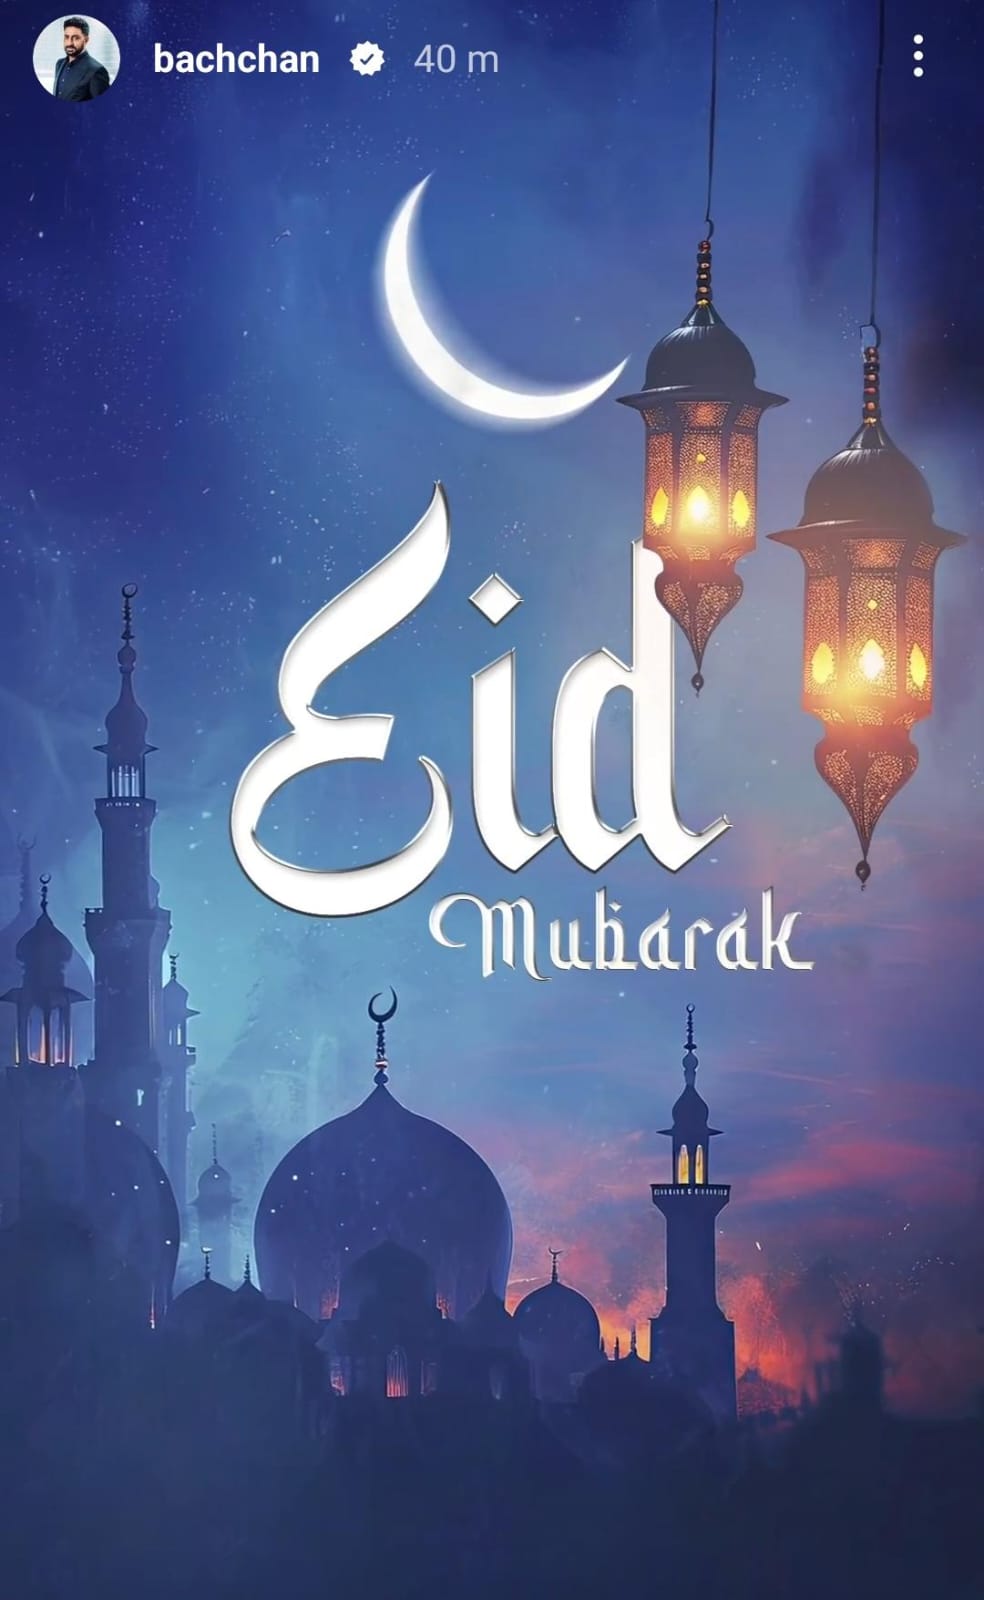 Celebs Eid Wish: अभिषेक बच्चन से लेकर जूनियर एनटीआर तक, सितारों ने फैंस को दी ईद की मुबारकबाद